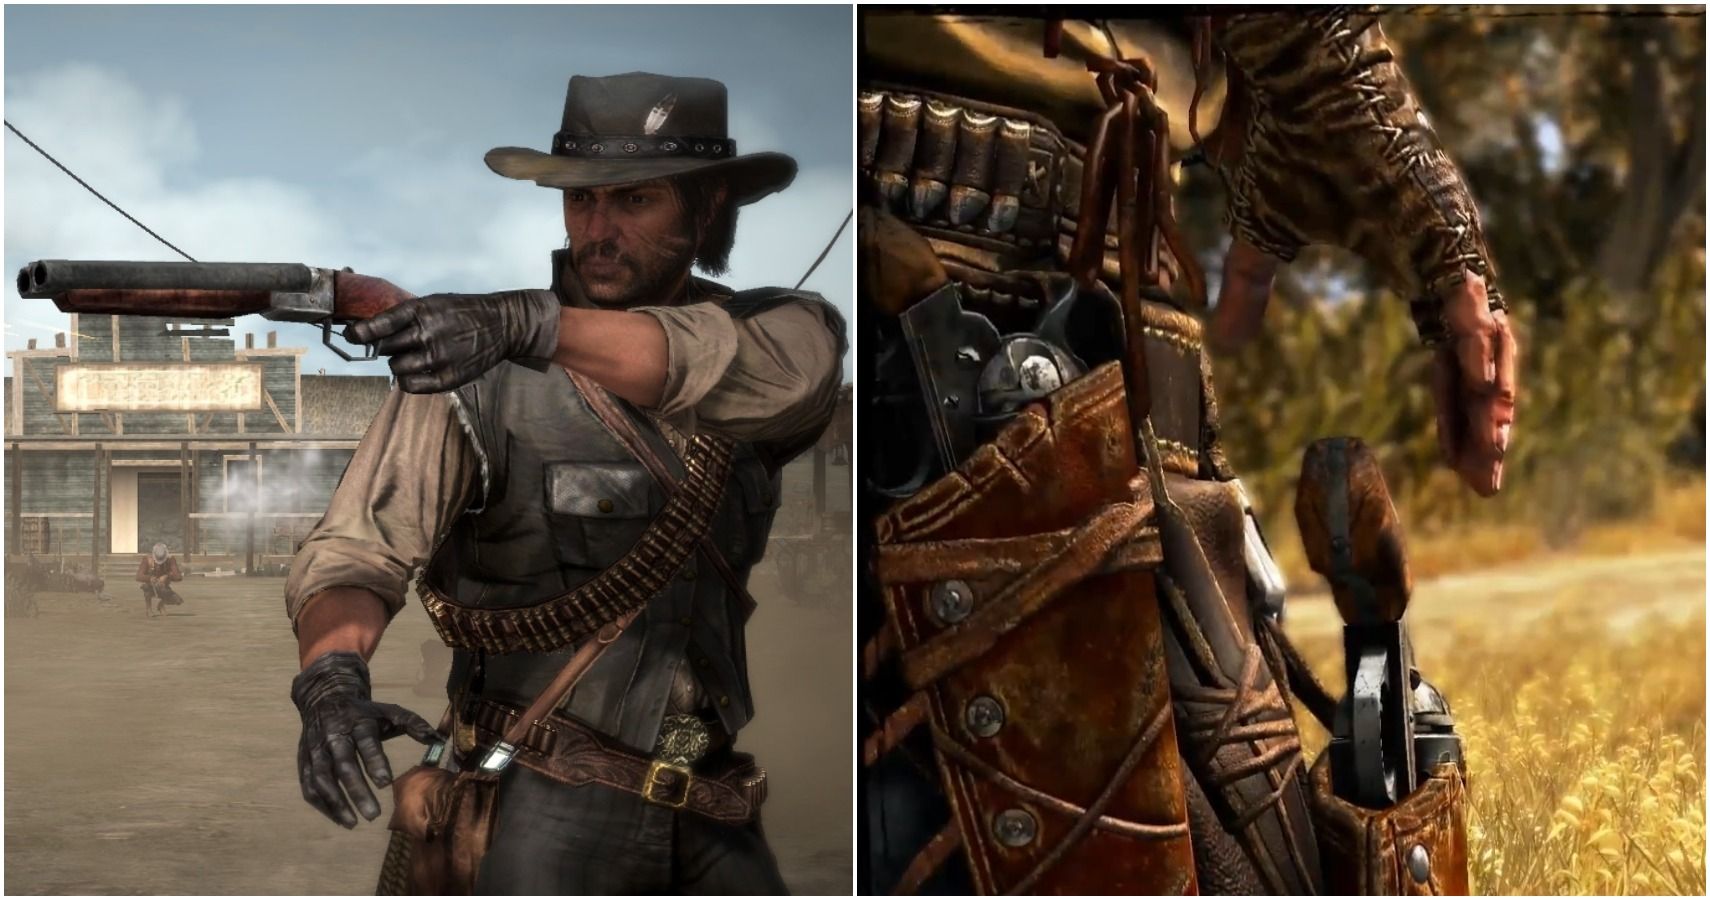 op gang brengen lood wasmiddel 10 Best Games Set In The American Wild West, According To Metacritic